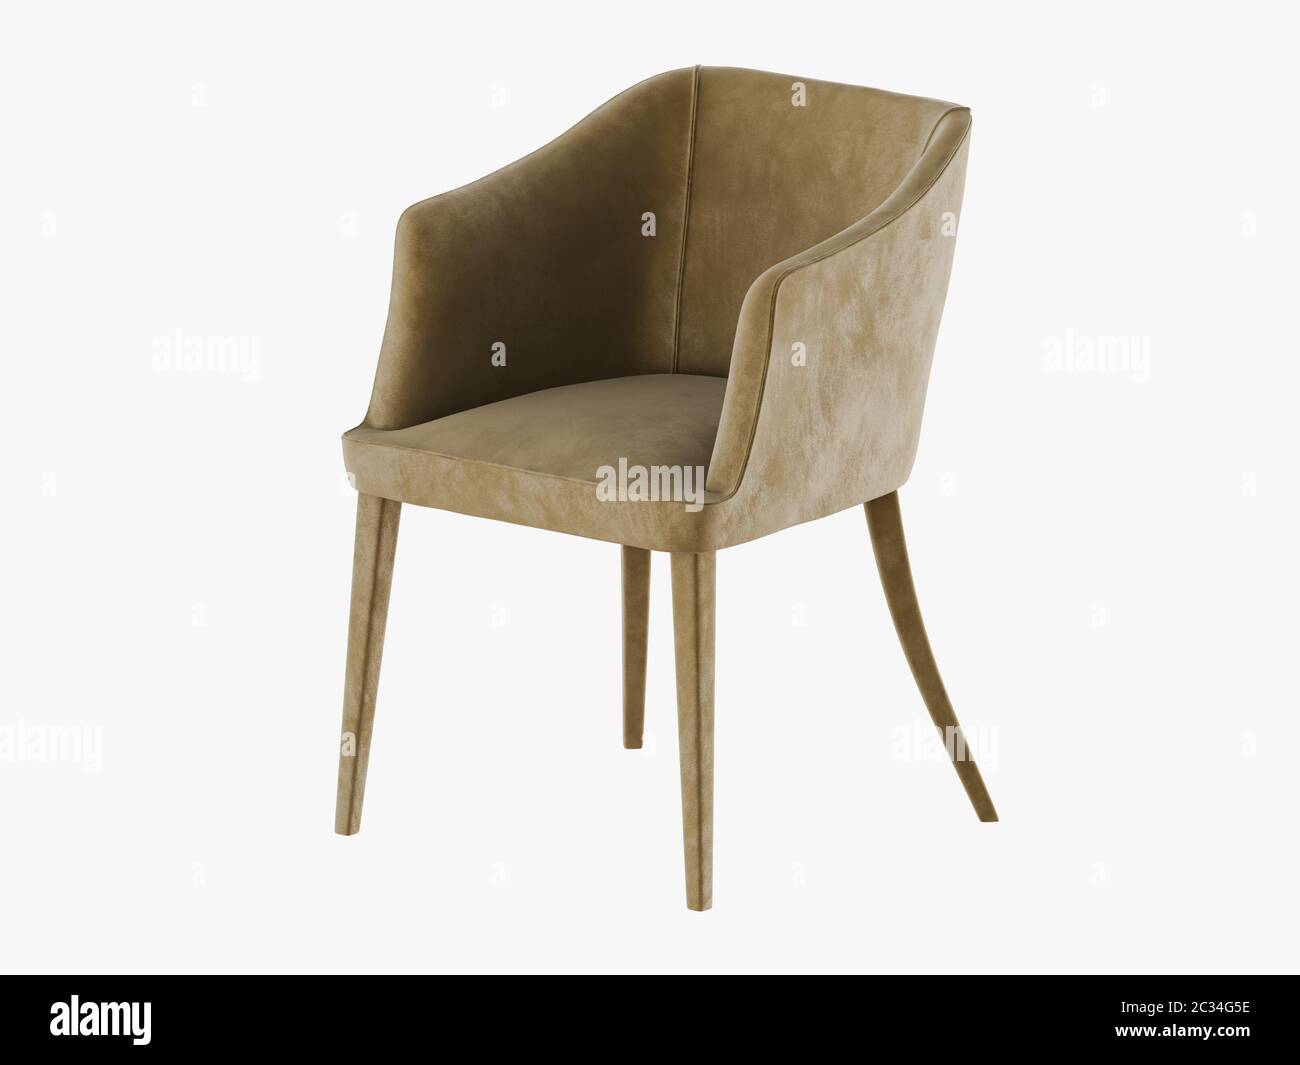 Chair material velveteen 3d rendering Stock Photo